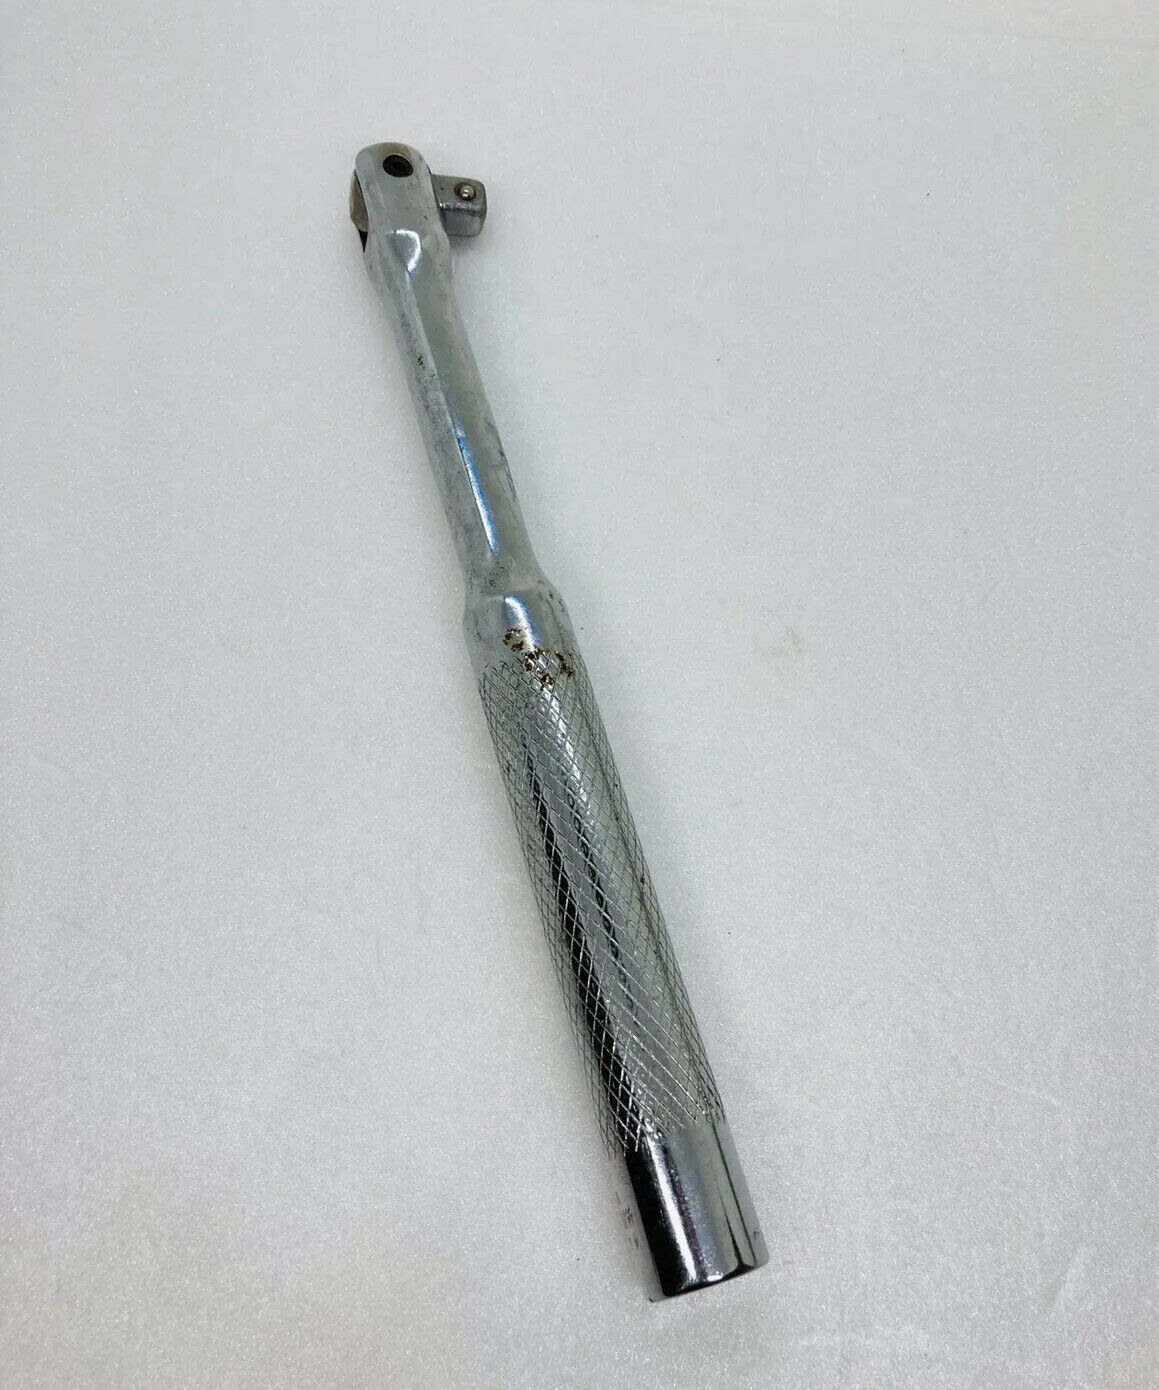 Rare Walden 3/8 Hinge Ratchet Wrench 4052H Breaker Bar USA Tool T1